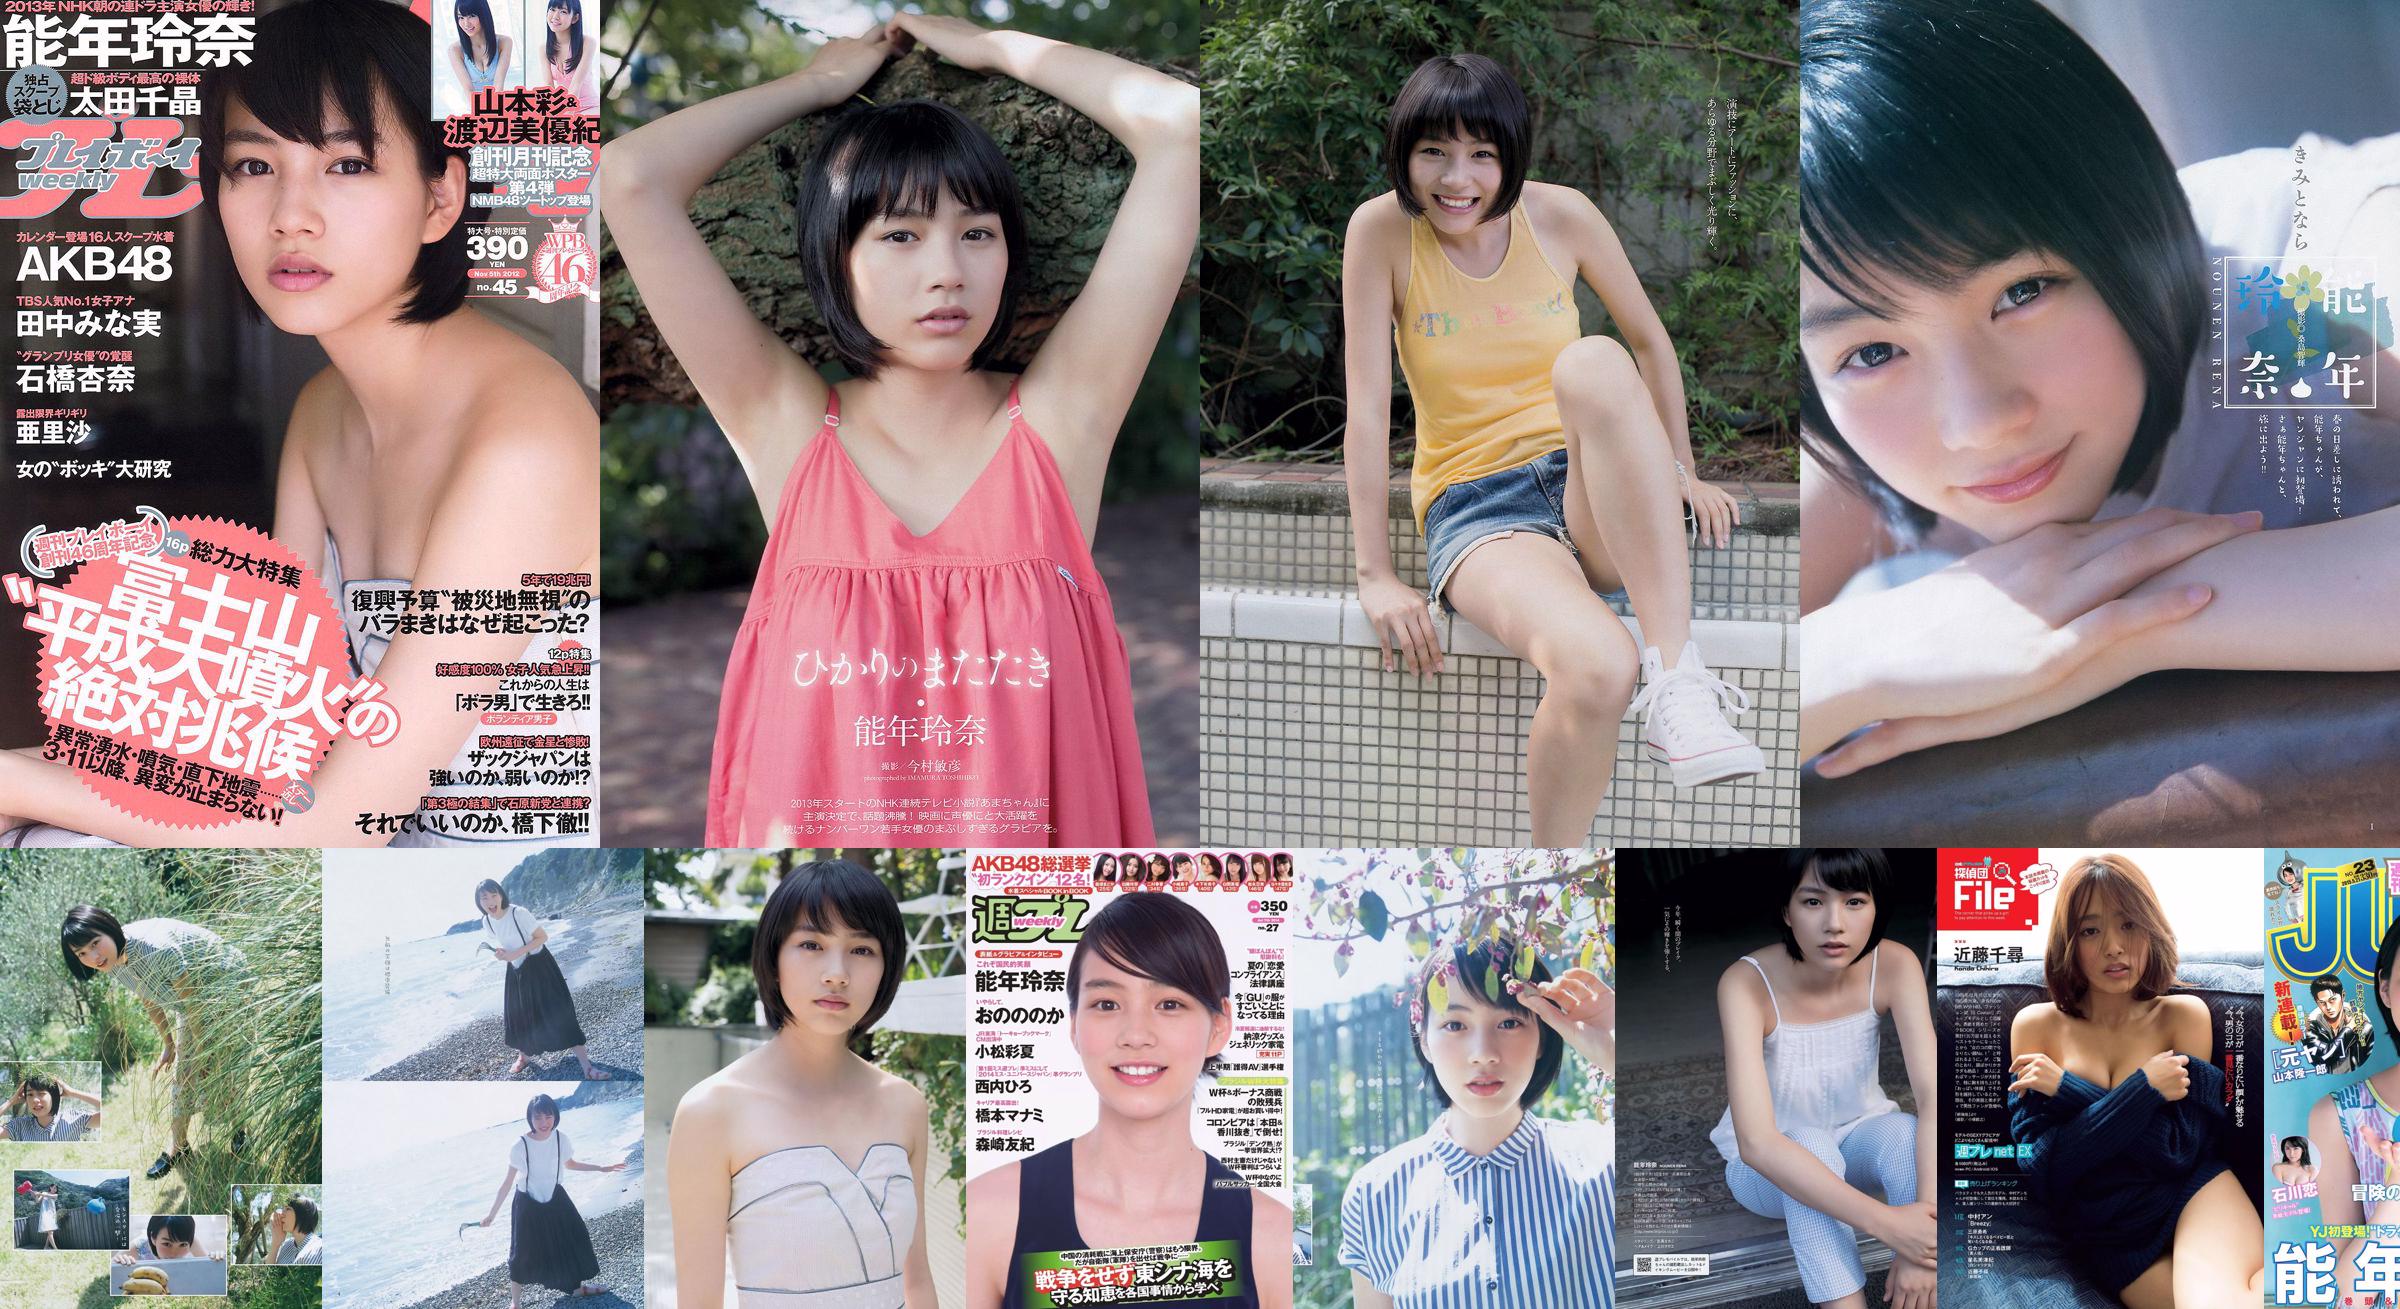 Rena Nonen Kazusa Okuyama & Haruka Fujikawa Ren Ishikawa [Lompatan Muda Mingguan] 2015 Majalah Foto No.23 No.e85cfb Halaman 10